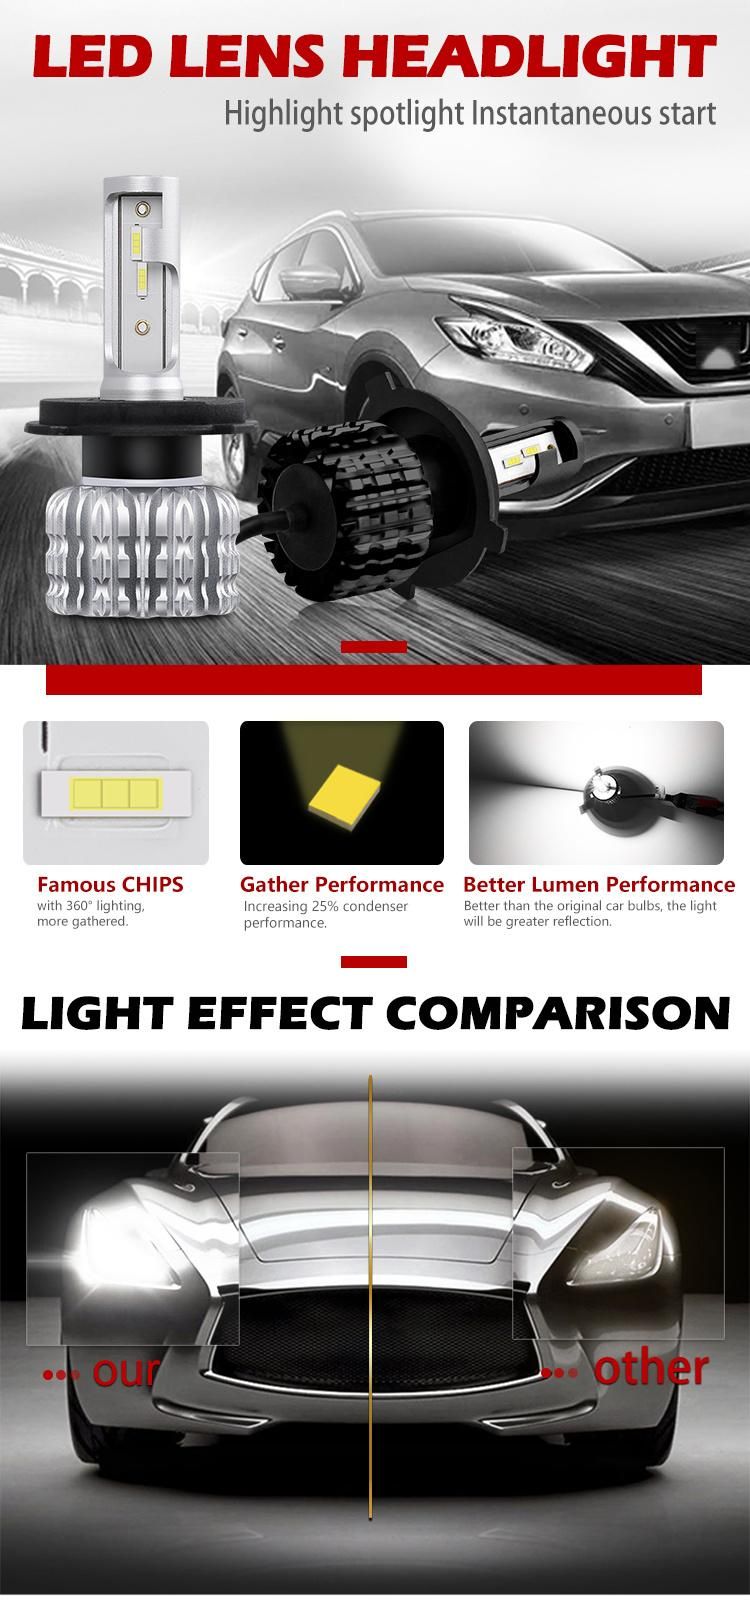 High Quality Car LED H4 Lamps K1 Fanless Light Bulb Kit H1 9005 9006 H11 12V H11 H7 Auto Car LED Headlight